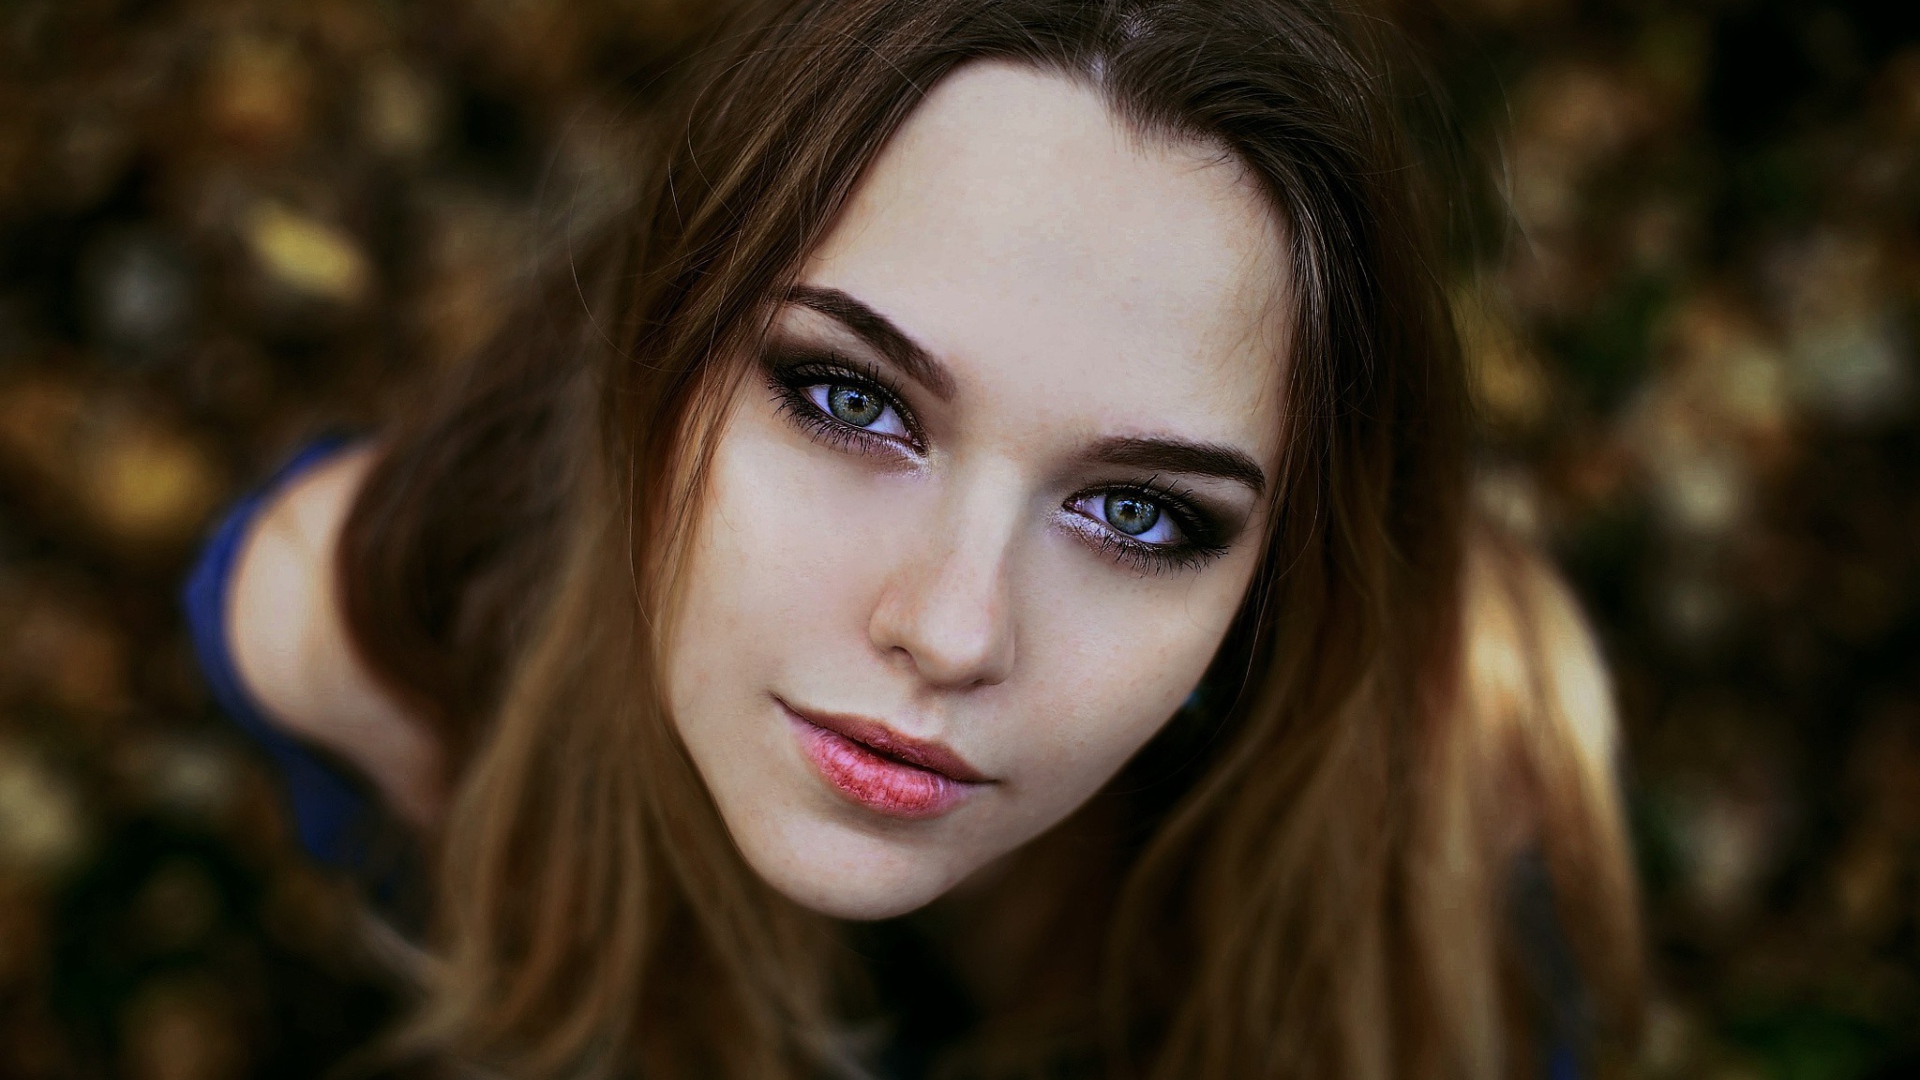 Девушка брюнетка с красивыми глазами 